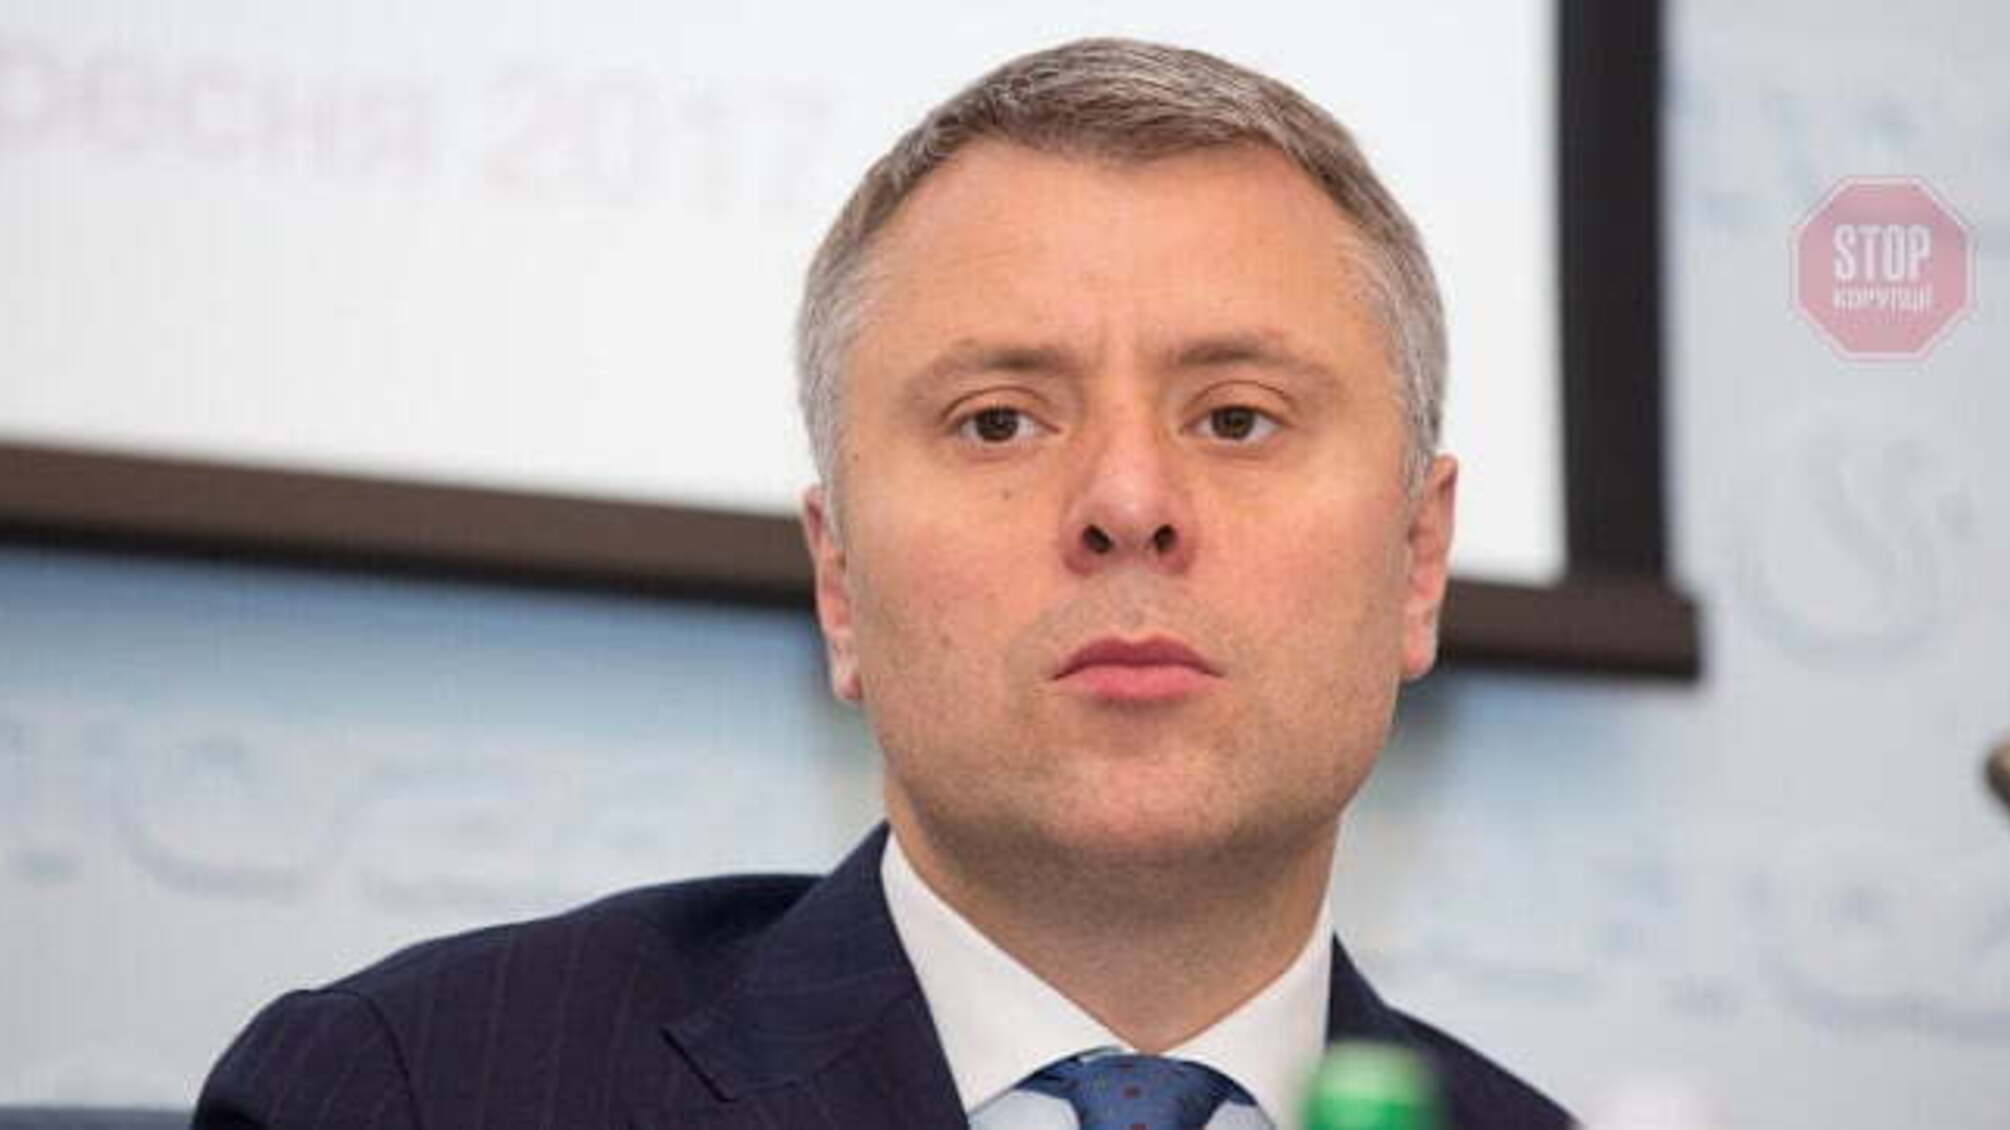 НАПК: Глава «Нафтогаза» Витренко назначен незаконно, он должен быть уволен